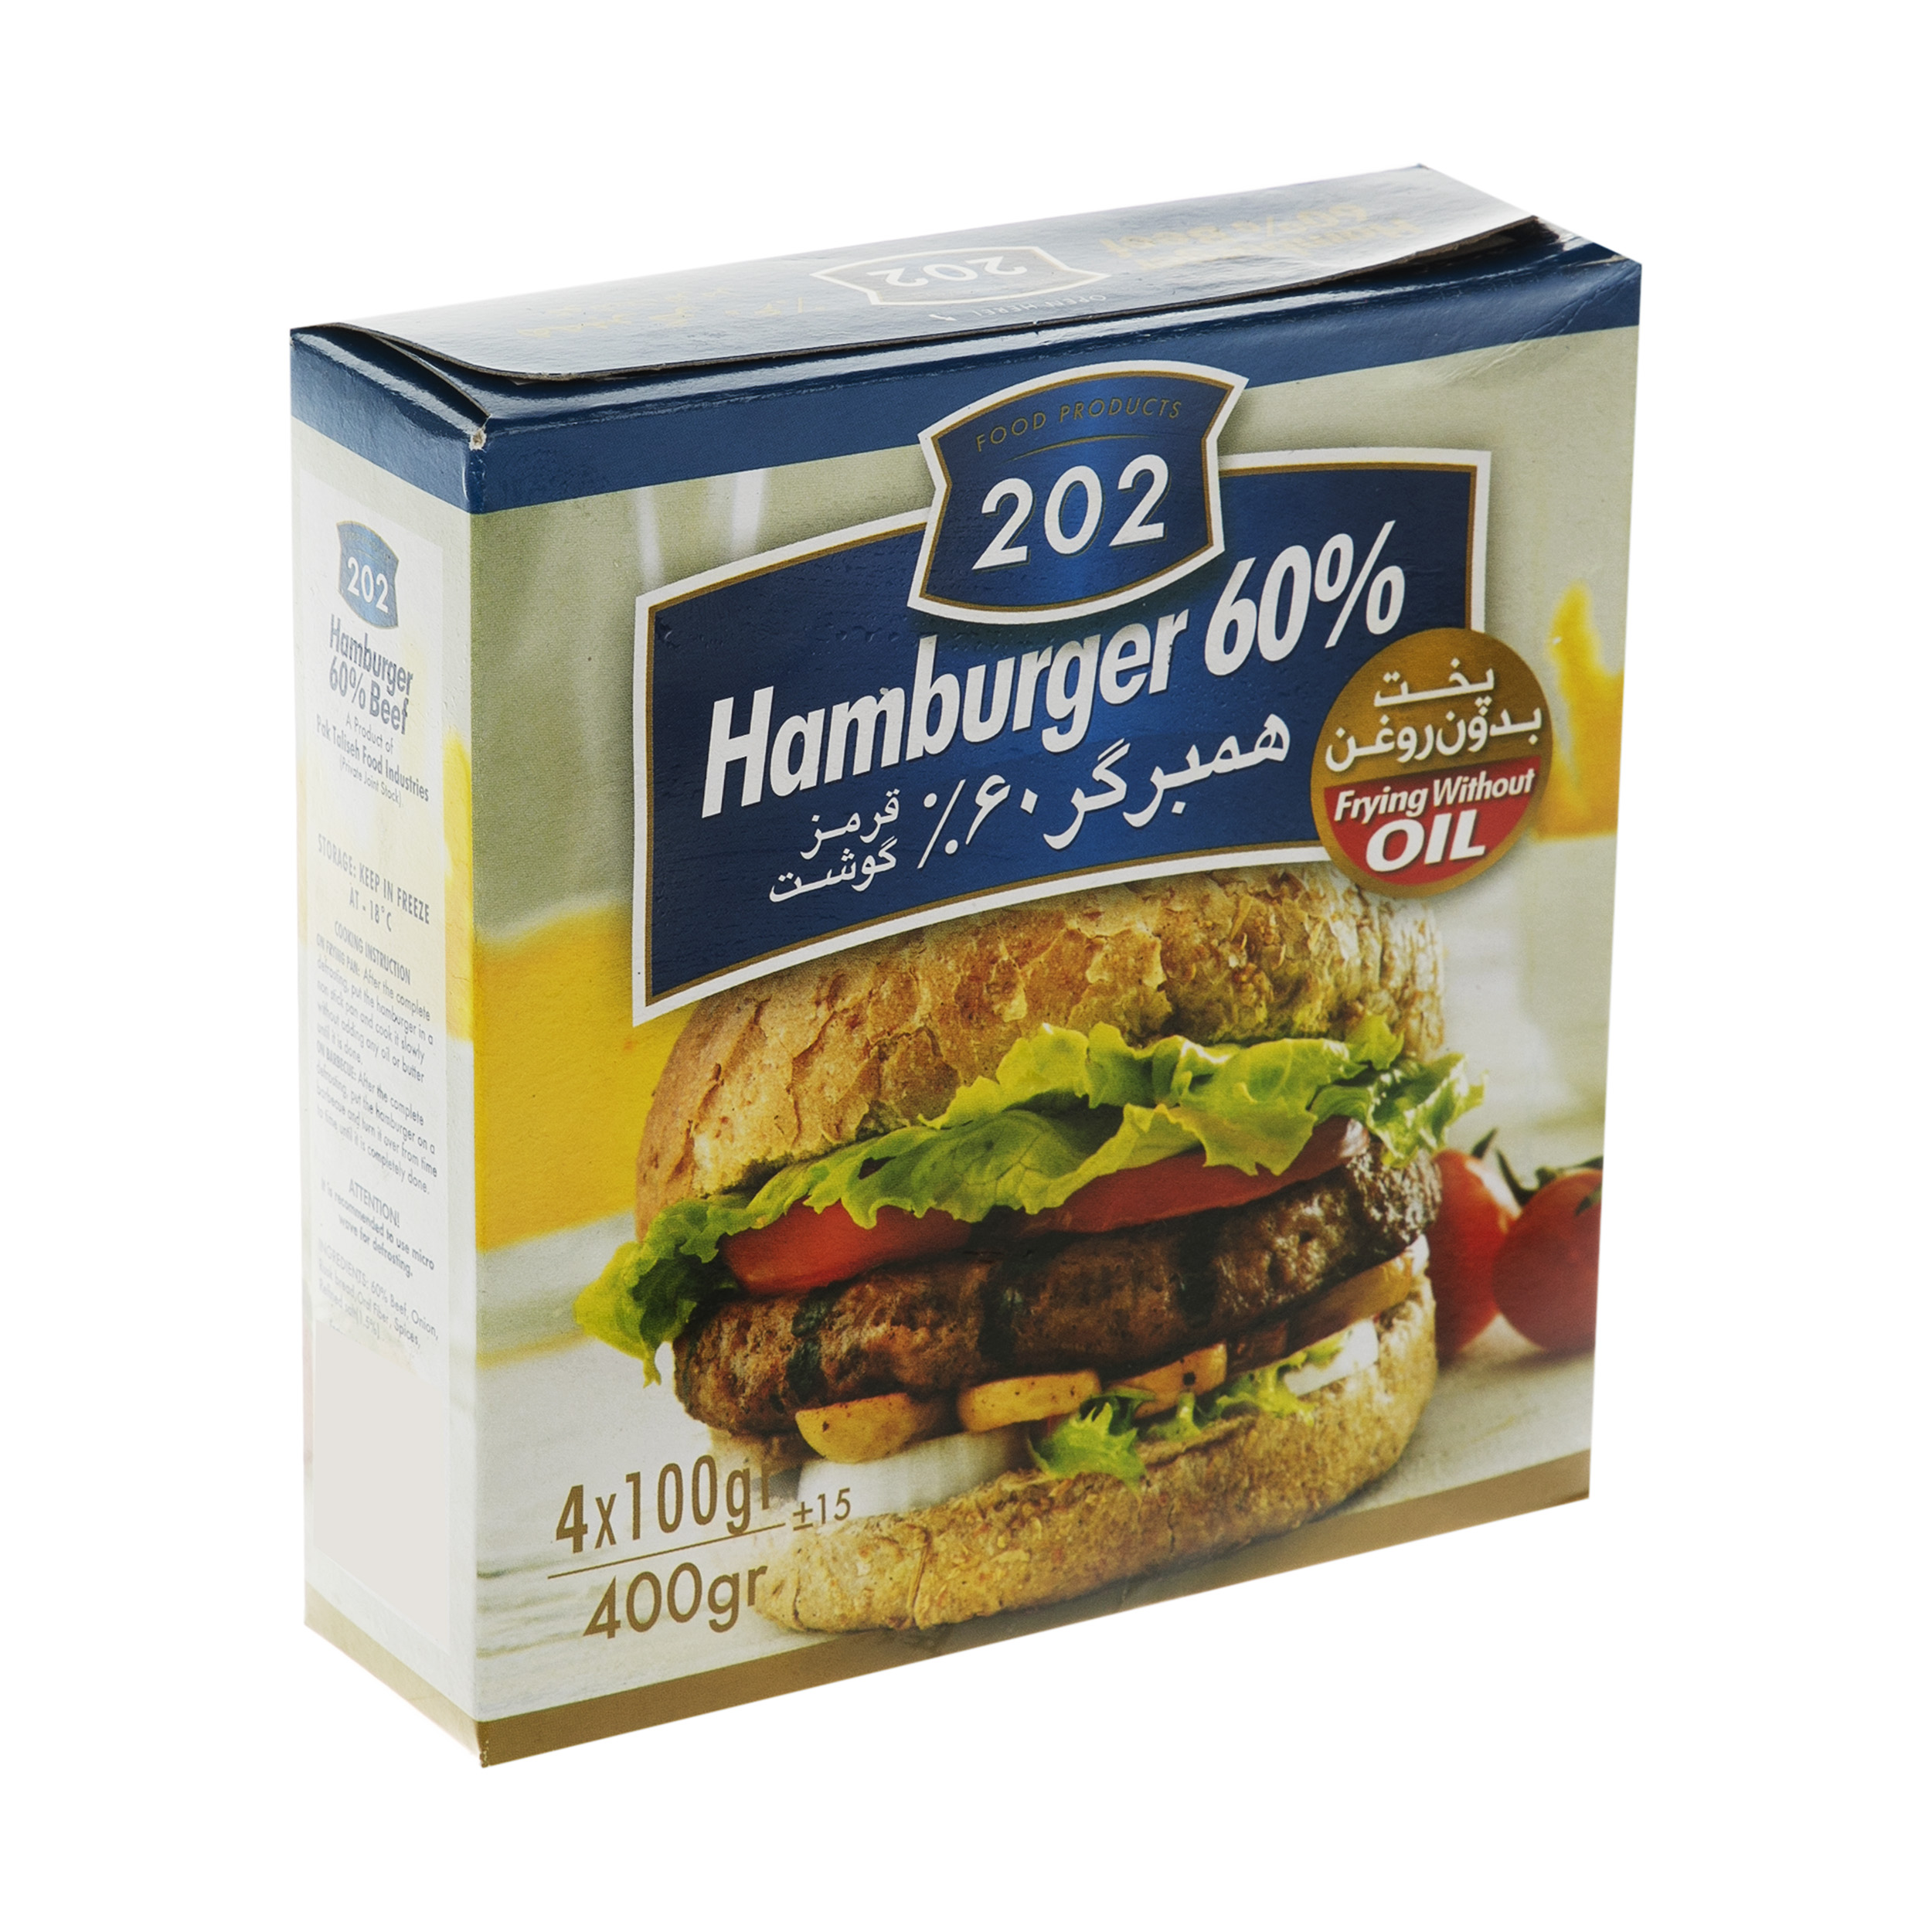 همبرگر 60 درصد گوشت قرمز 202 وزن 400 گرم